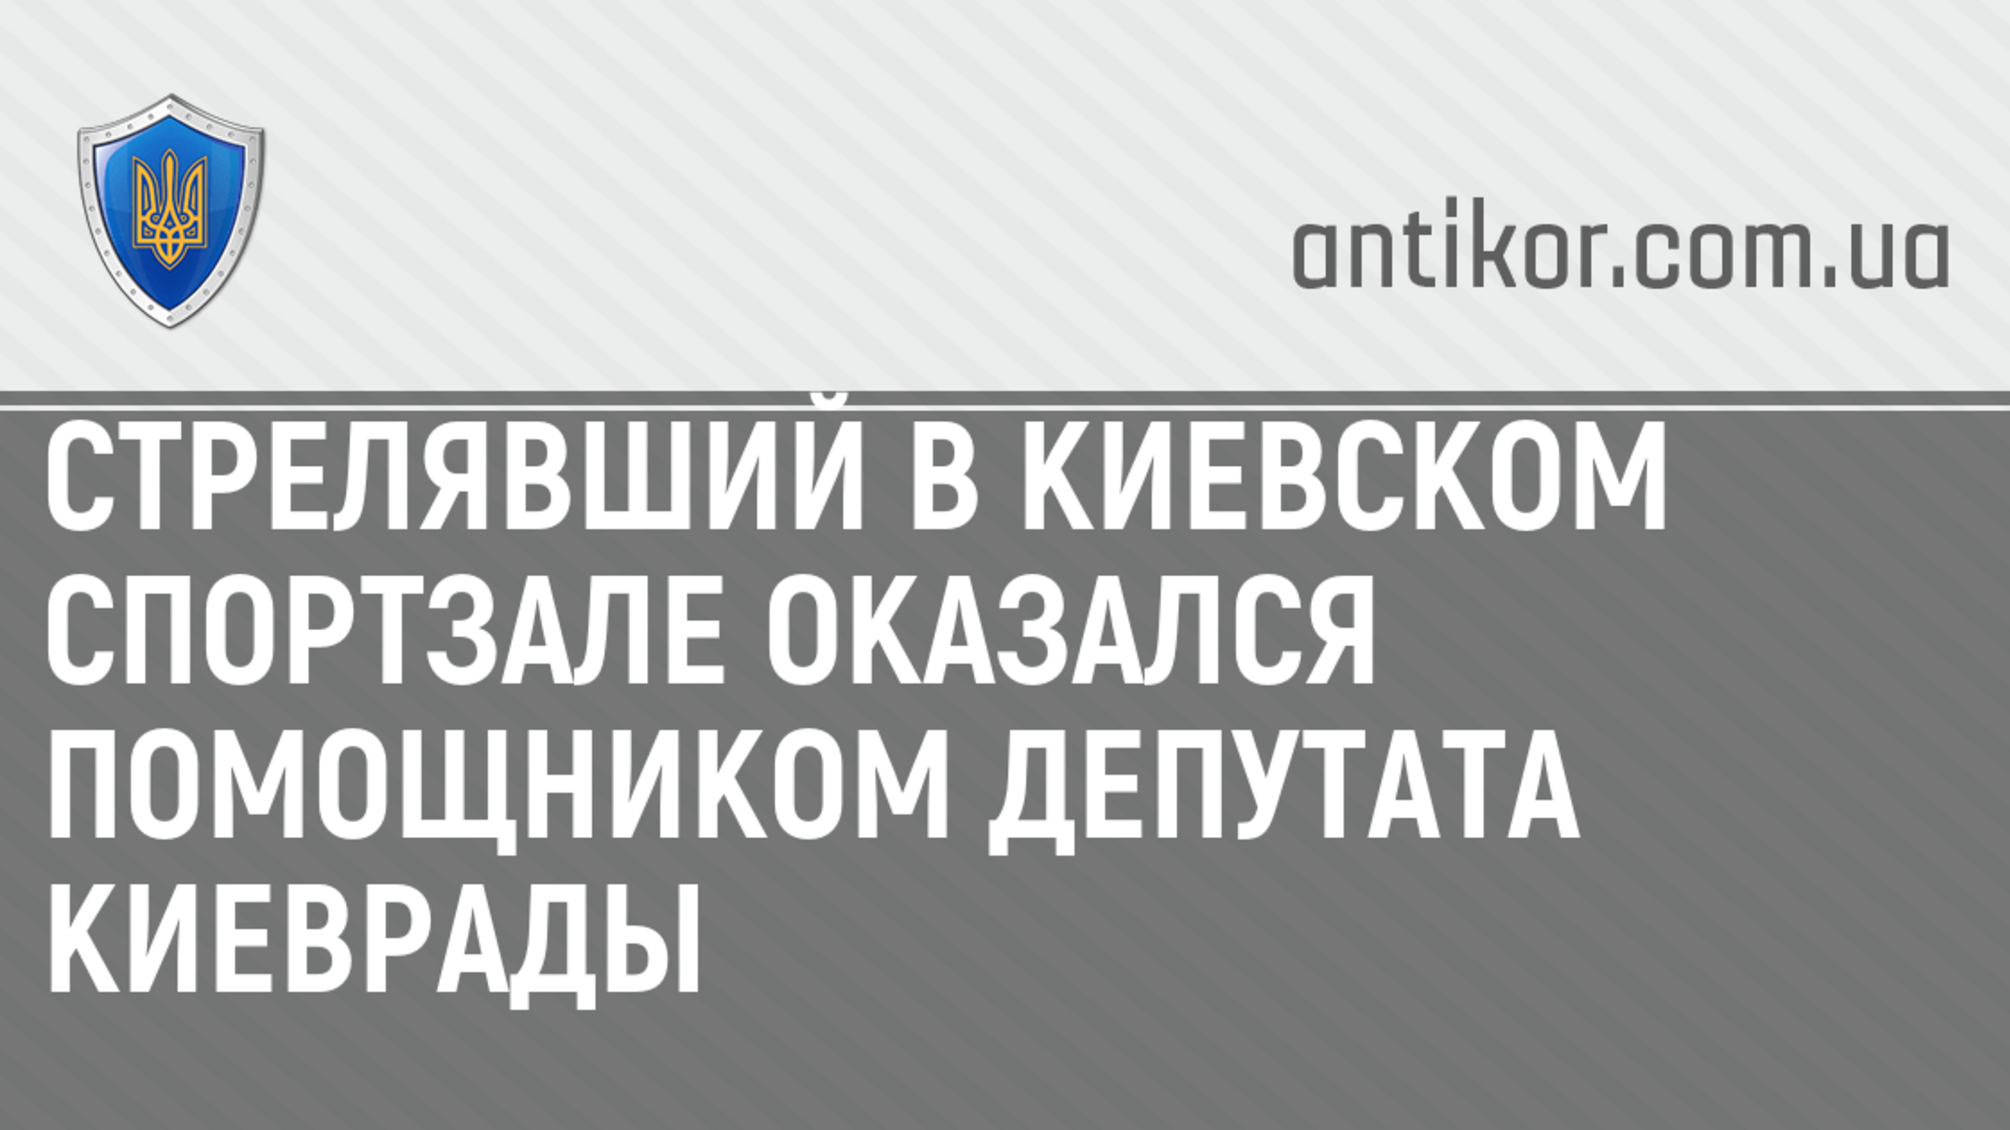 Стрелявший в киевском спортзале оказался помощником депутата Киеврады